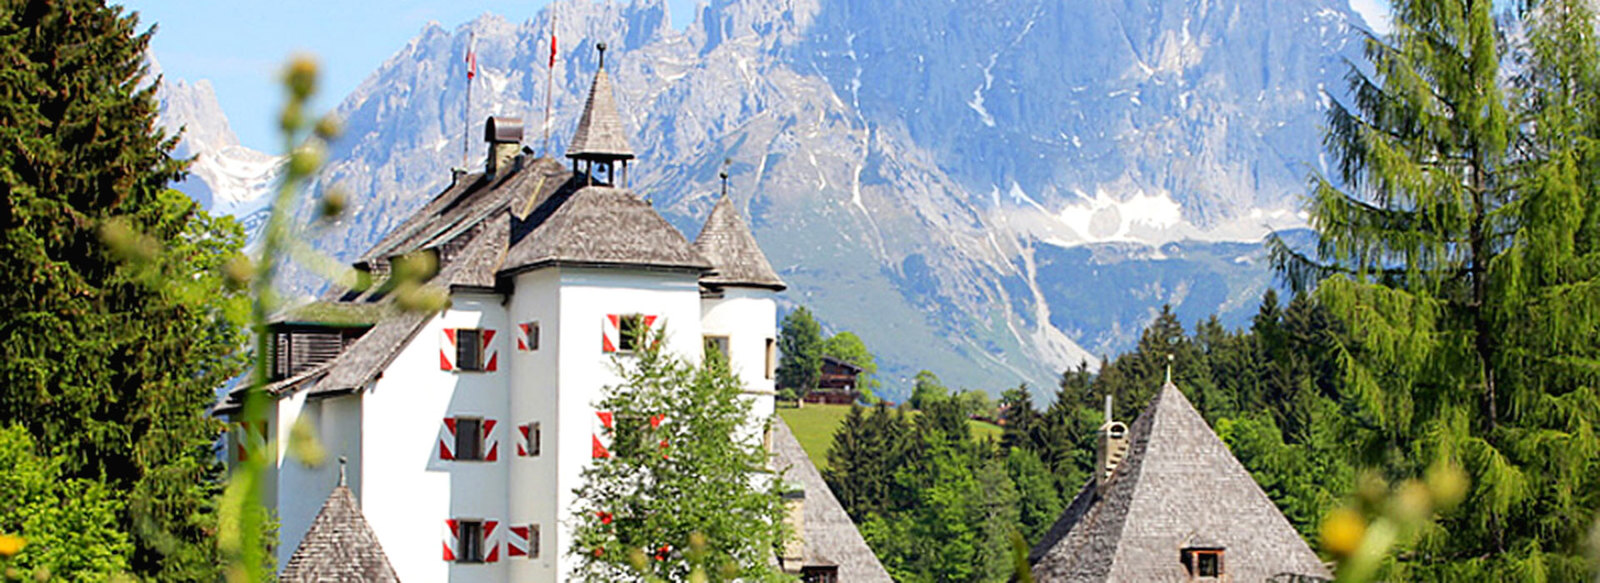 Una indimenticabile vacanza tra paesaggi e tradizioni dell'Austria